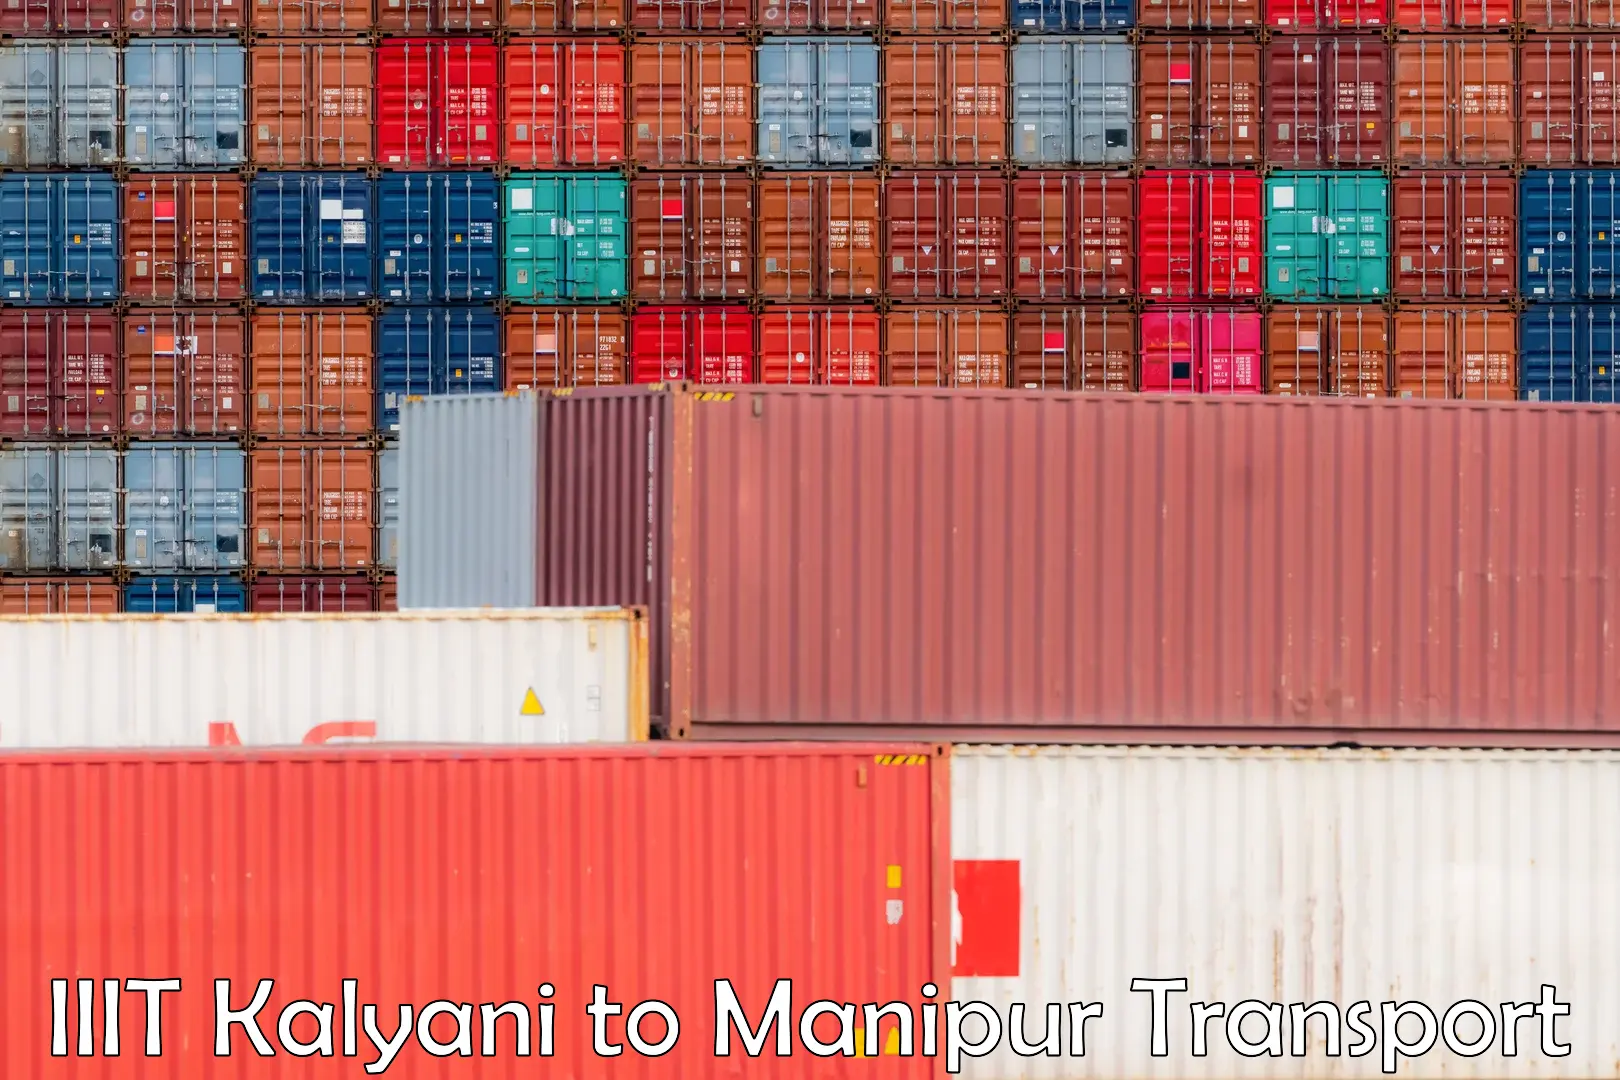 Furniture transport service IIIT Kalyani to Manipur